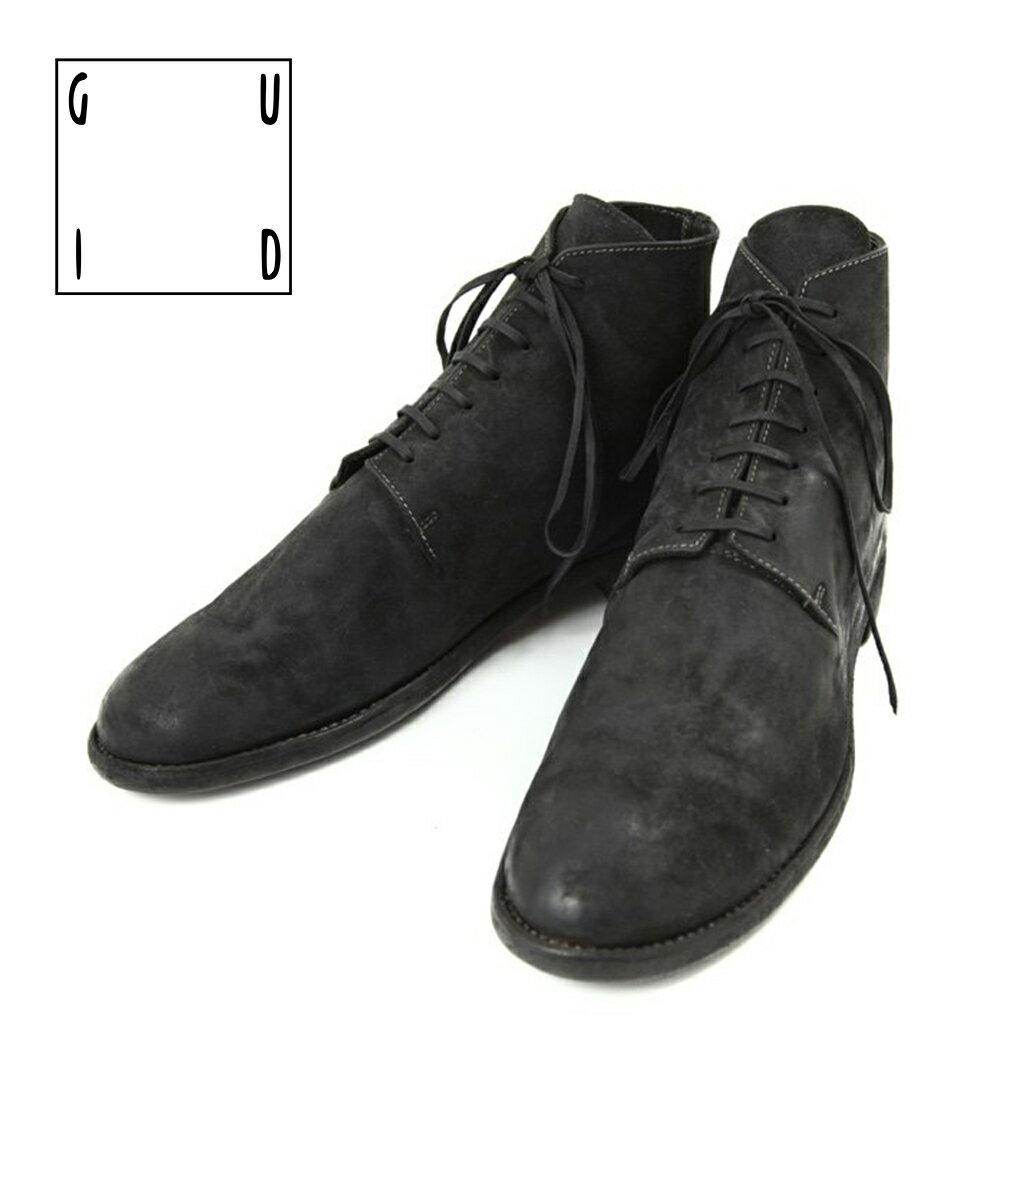 【送料無料】GUIDI / グイディ : NEW MIDLACE BOOTS : ニューミッドレースブーツ ブーツ ミッドレースシューズ レザーシューズ レースタイプ 革靴 メンズ ブラック トラッド クラシック グッドイヤーウェルト製法 コードバン : 17-cordovanblk-4a【RIP】